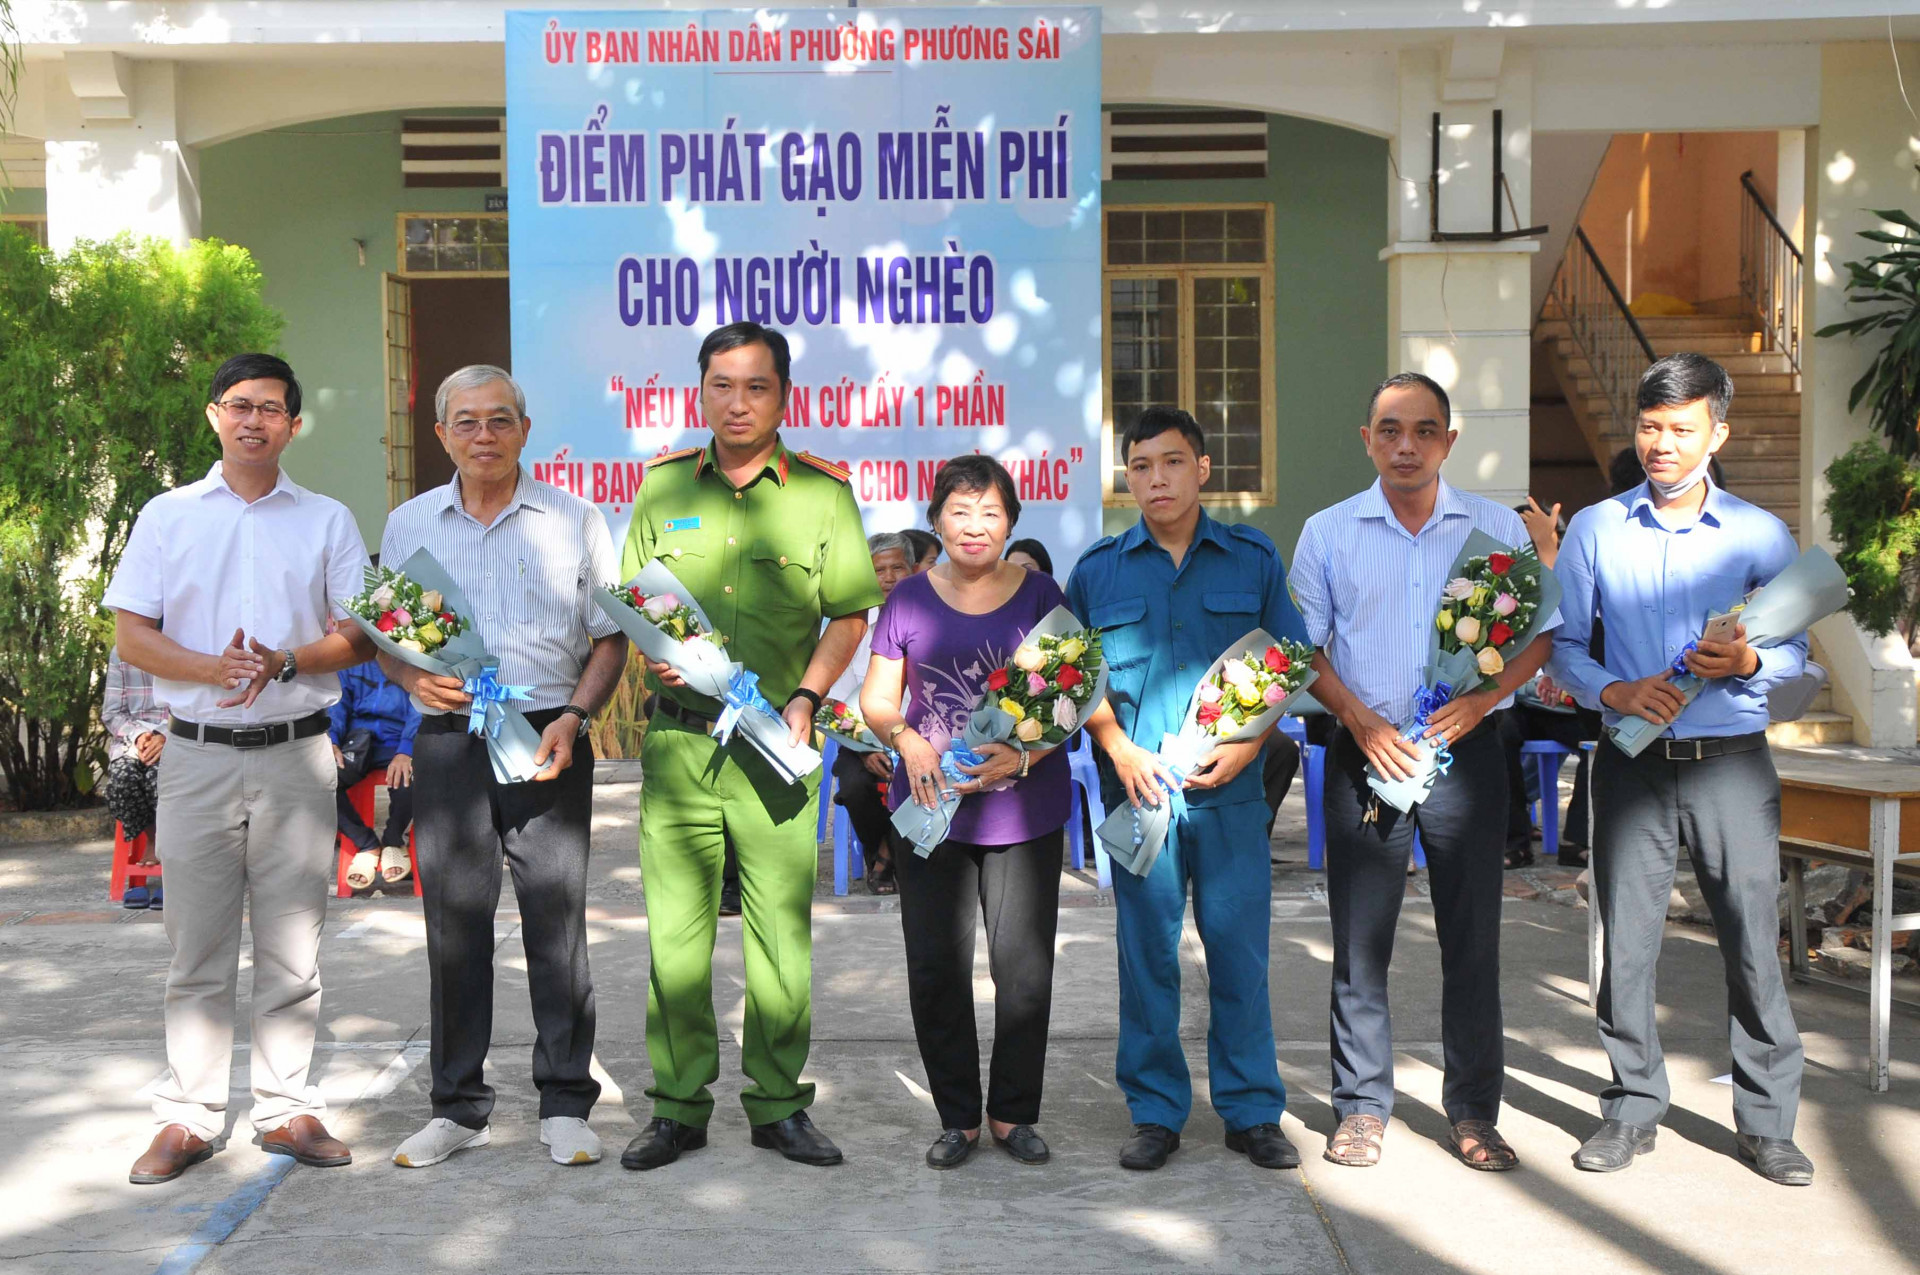 Ông Huỳnh Quang Tú - Chủ tịch UBND phường Phương Sài tặng hoa tri ân các cán bộ, viên chức phường đã tích cực hỗ trợ hoạt động của máy  "ATM gạo " thời gian qua